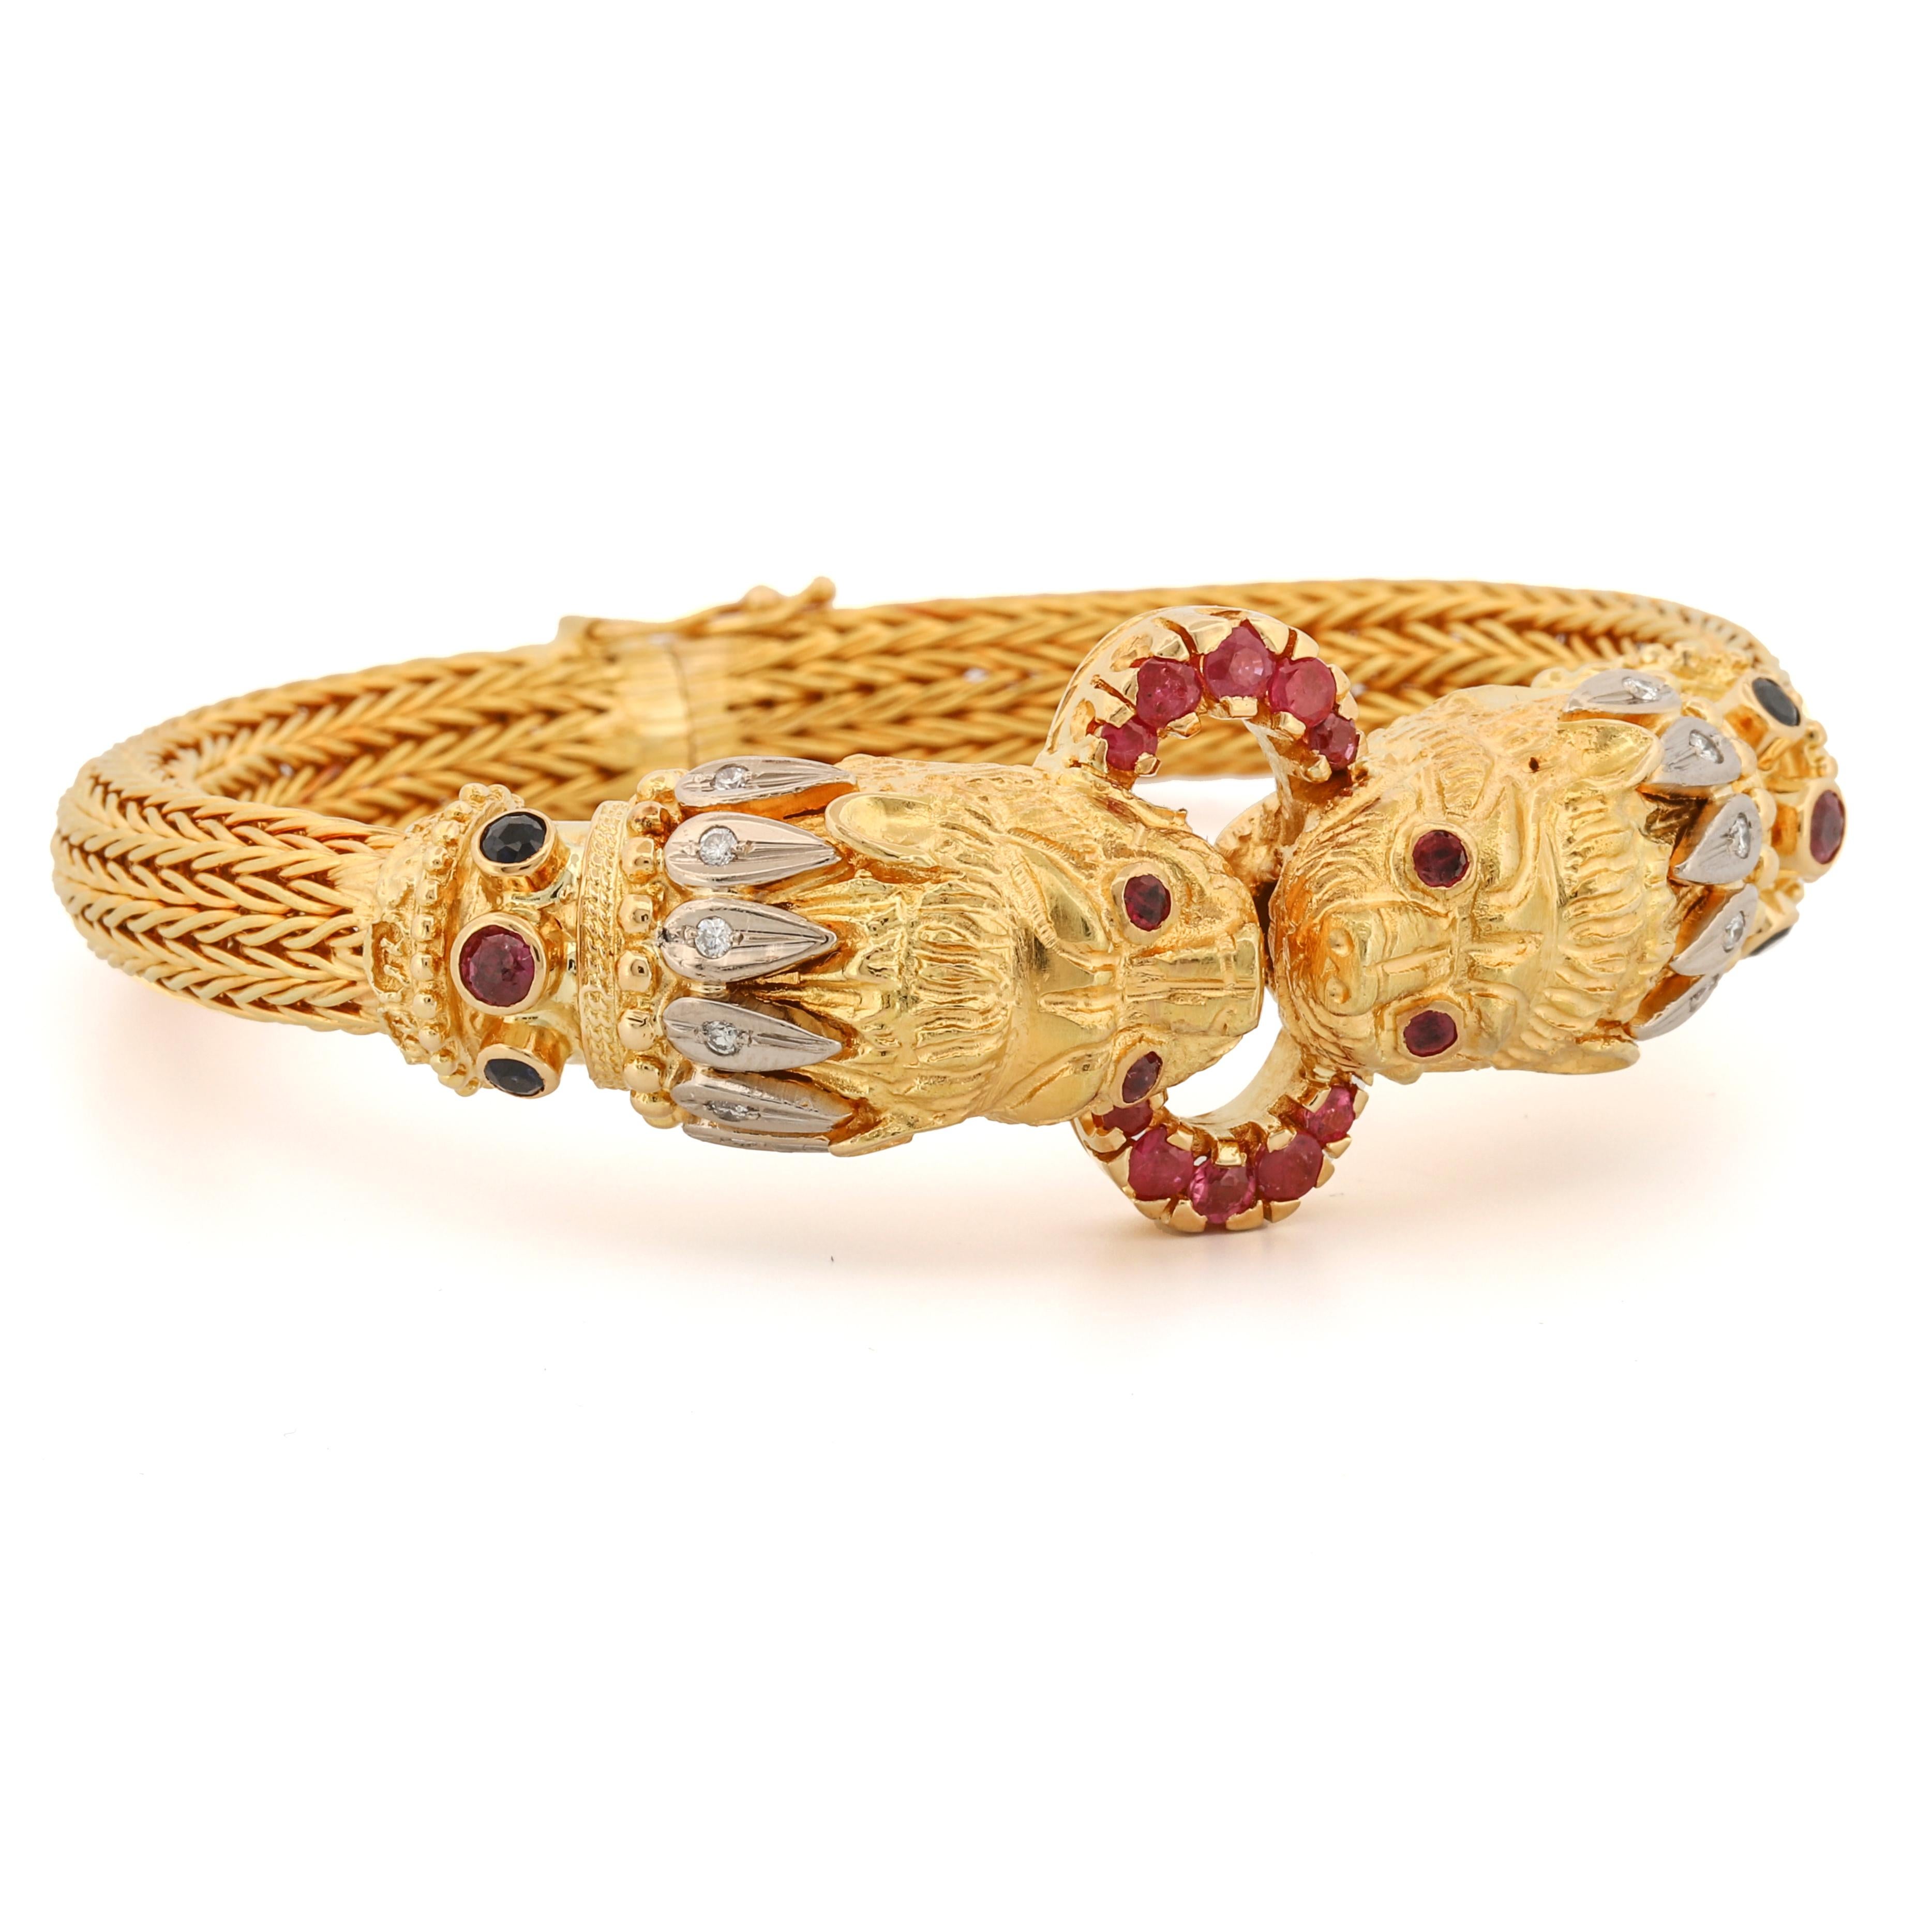 Werten Sie Ihre Schmucksammlung mit dem exquisiten Lalaounis Double Lion Head Bracelet auf. Dieses in Griechenland handgefertigte Meisterwerk aus 18 Karat Gold zeigt ein einzigartiges und kühnes mythologisches Design. Dieses Schmuckstück ist ein